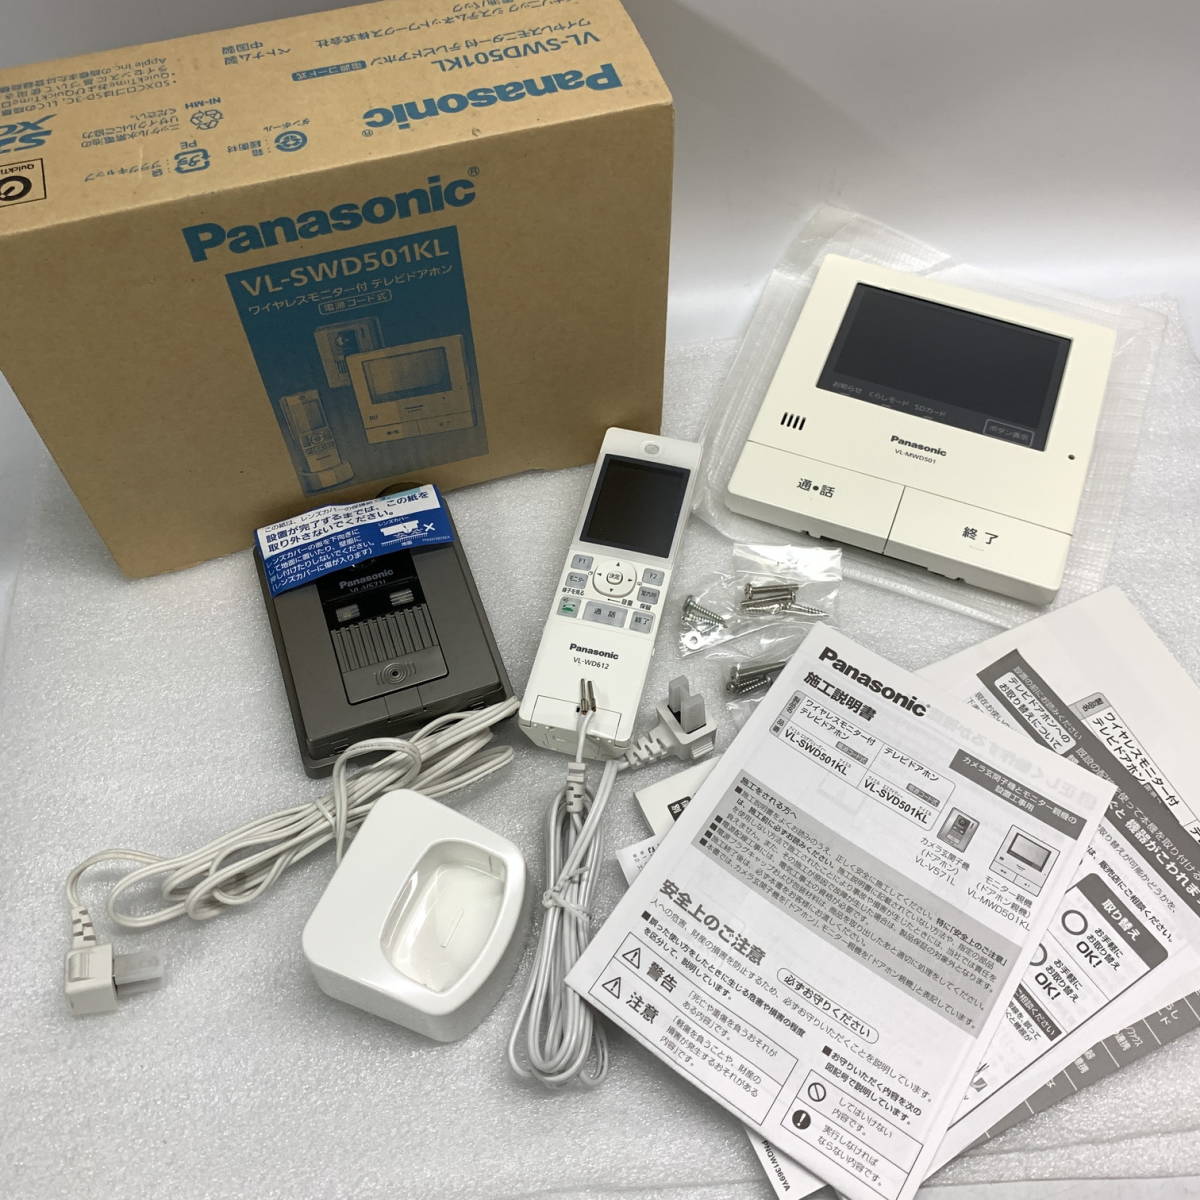 ◇ Panasonic ワイヤレスモニター付 テレビドアホン VL-SWD501KL